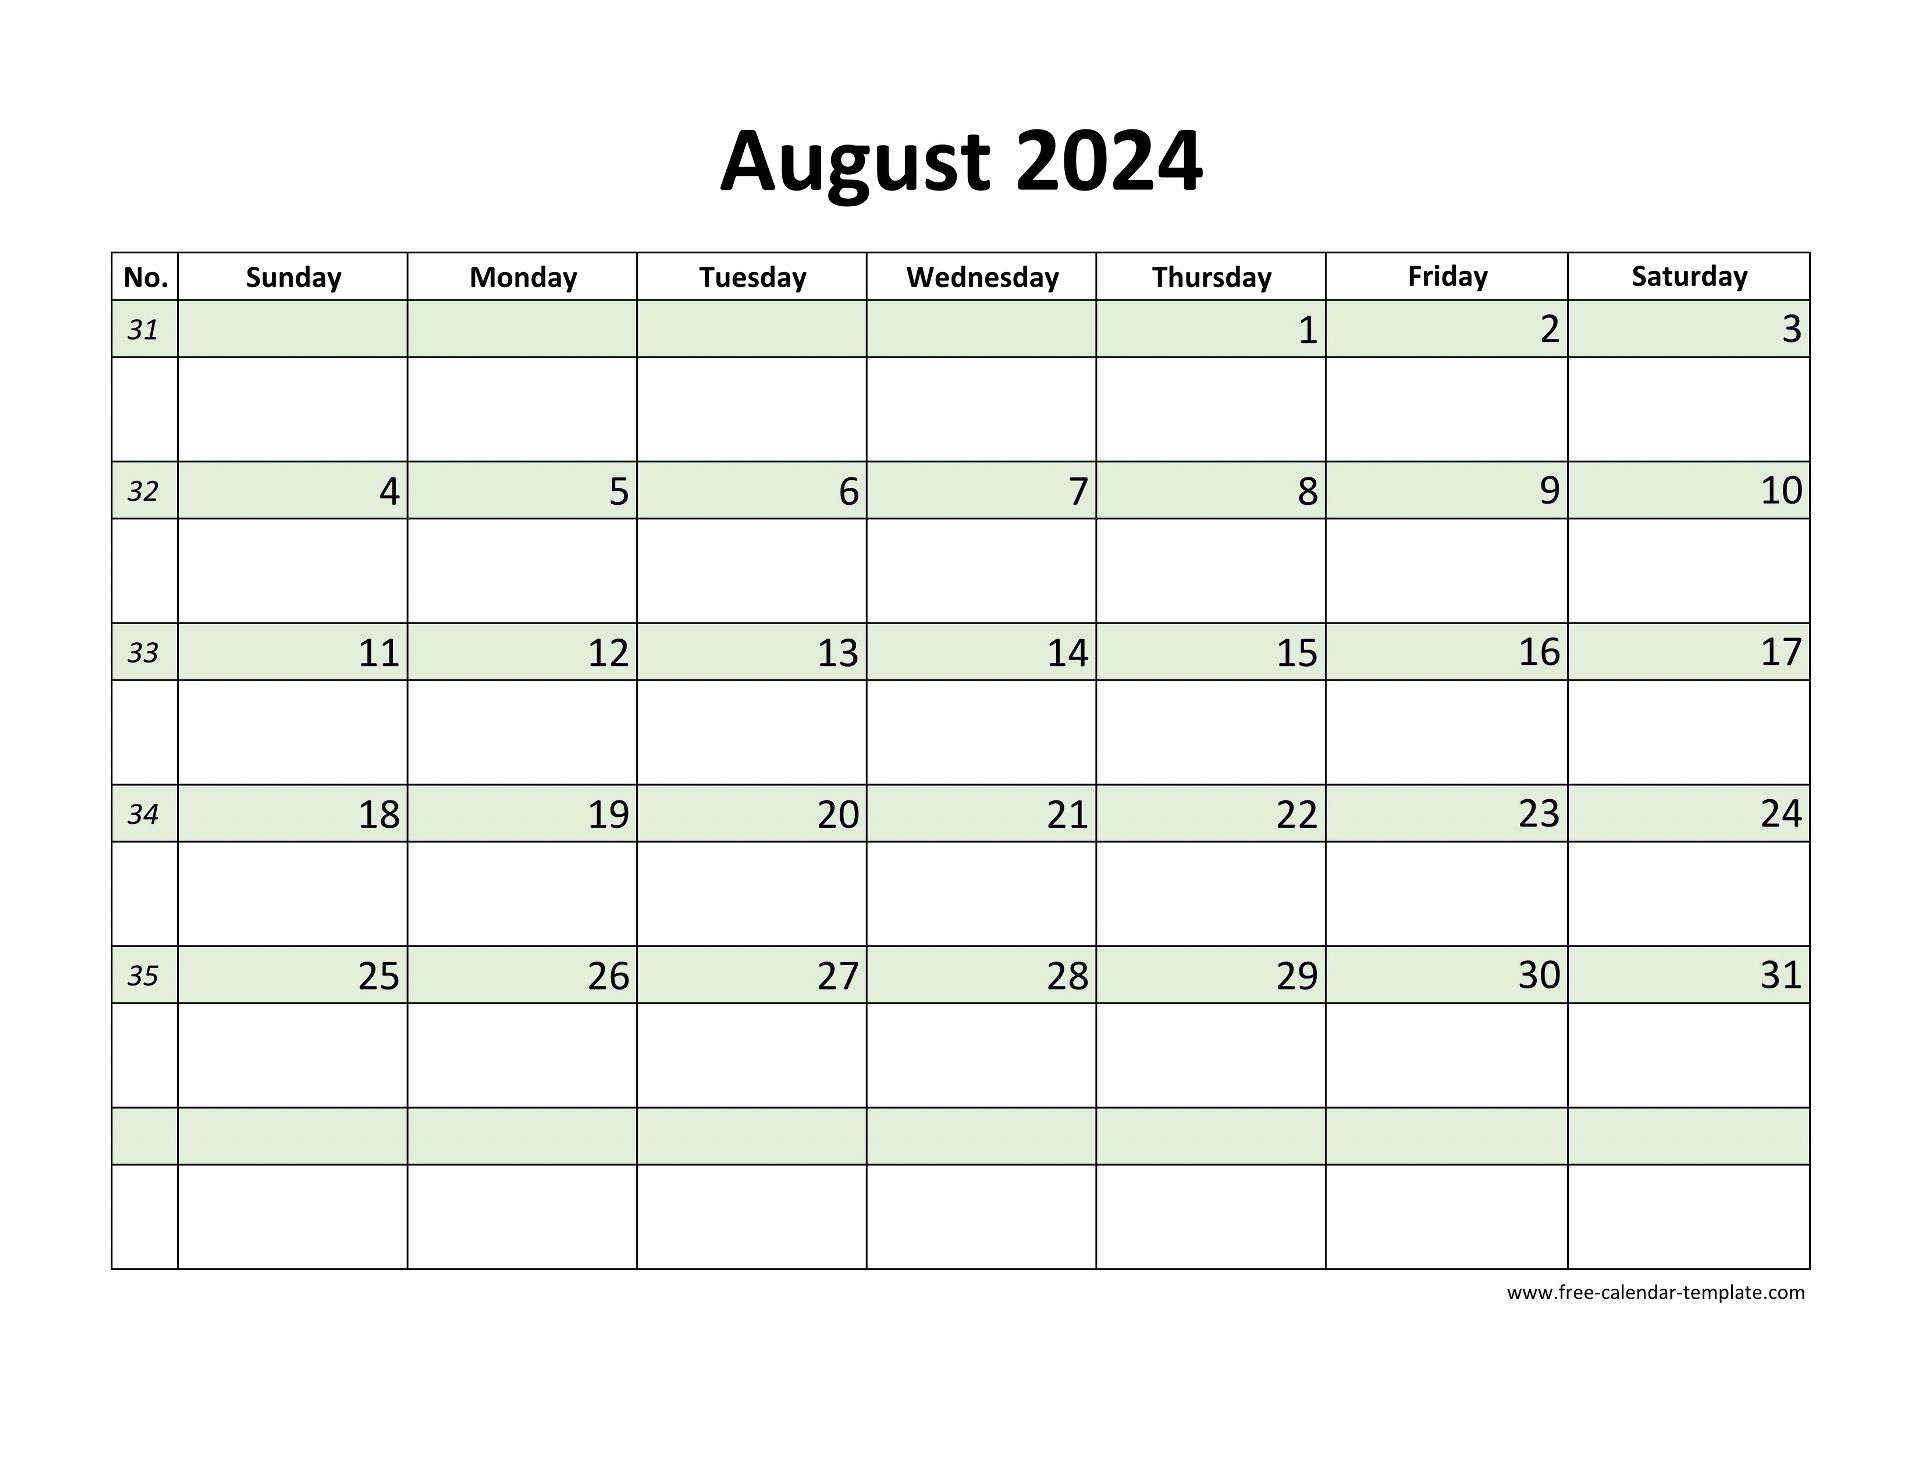 August 2024 Free Calendar Tempplate